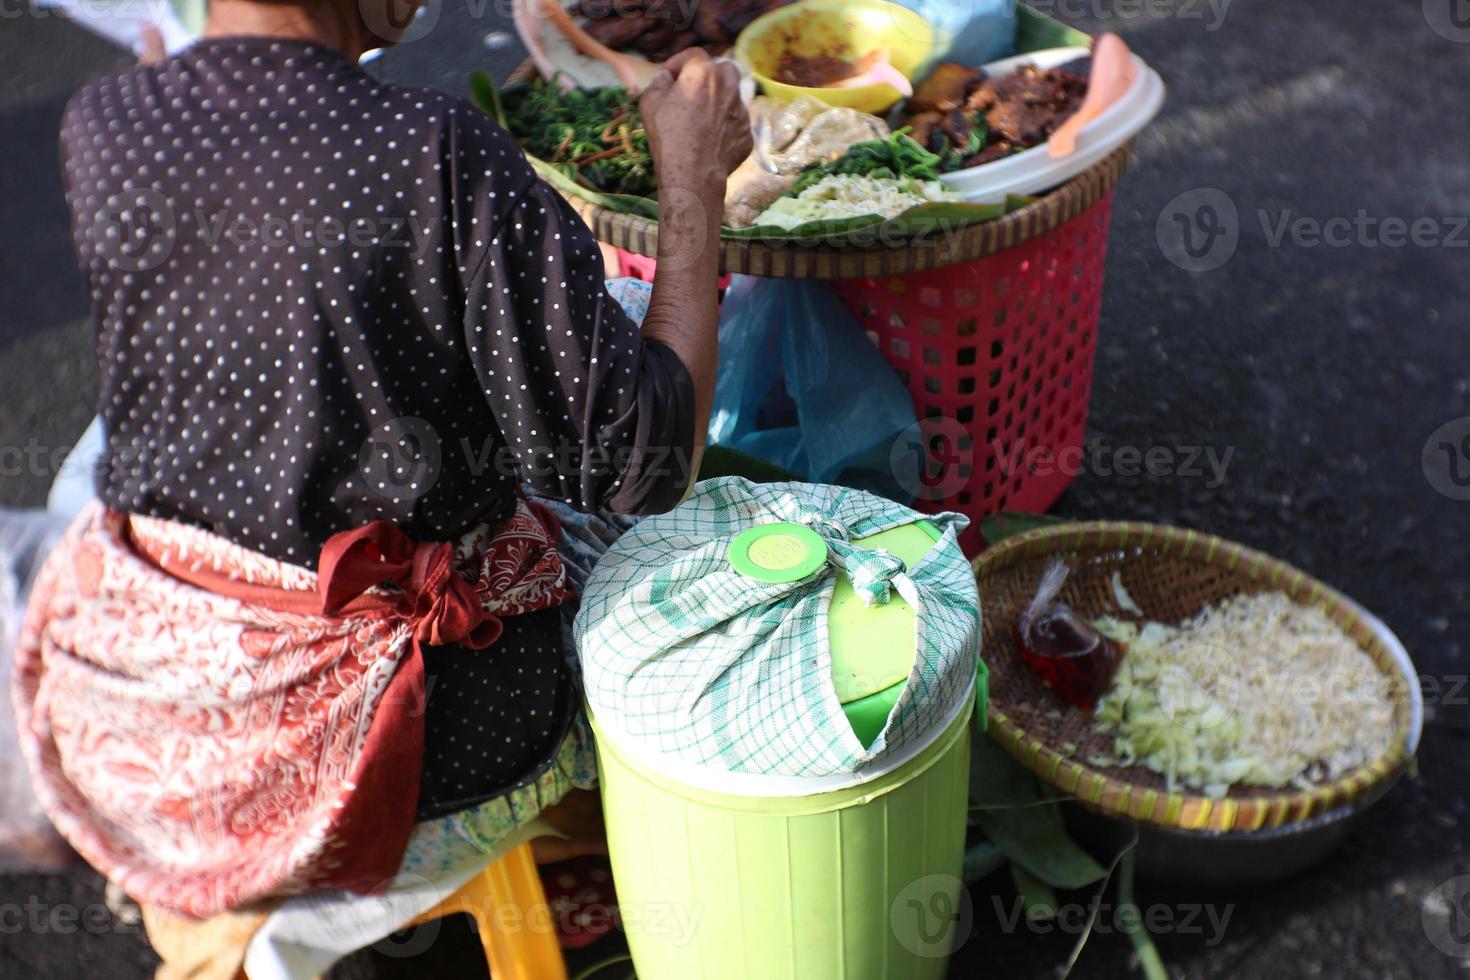 vendedor de arroz pecel sem mesa, arroz pecel é arroz com vários legumes e molho de amendoim doce e picante foto